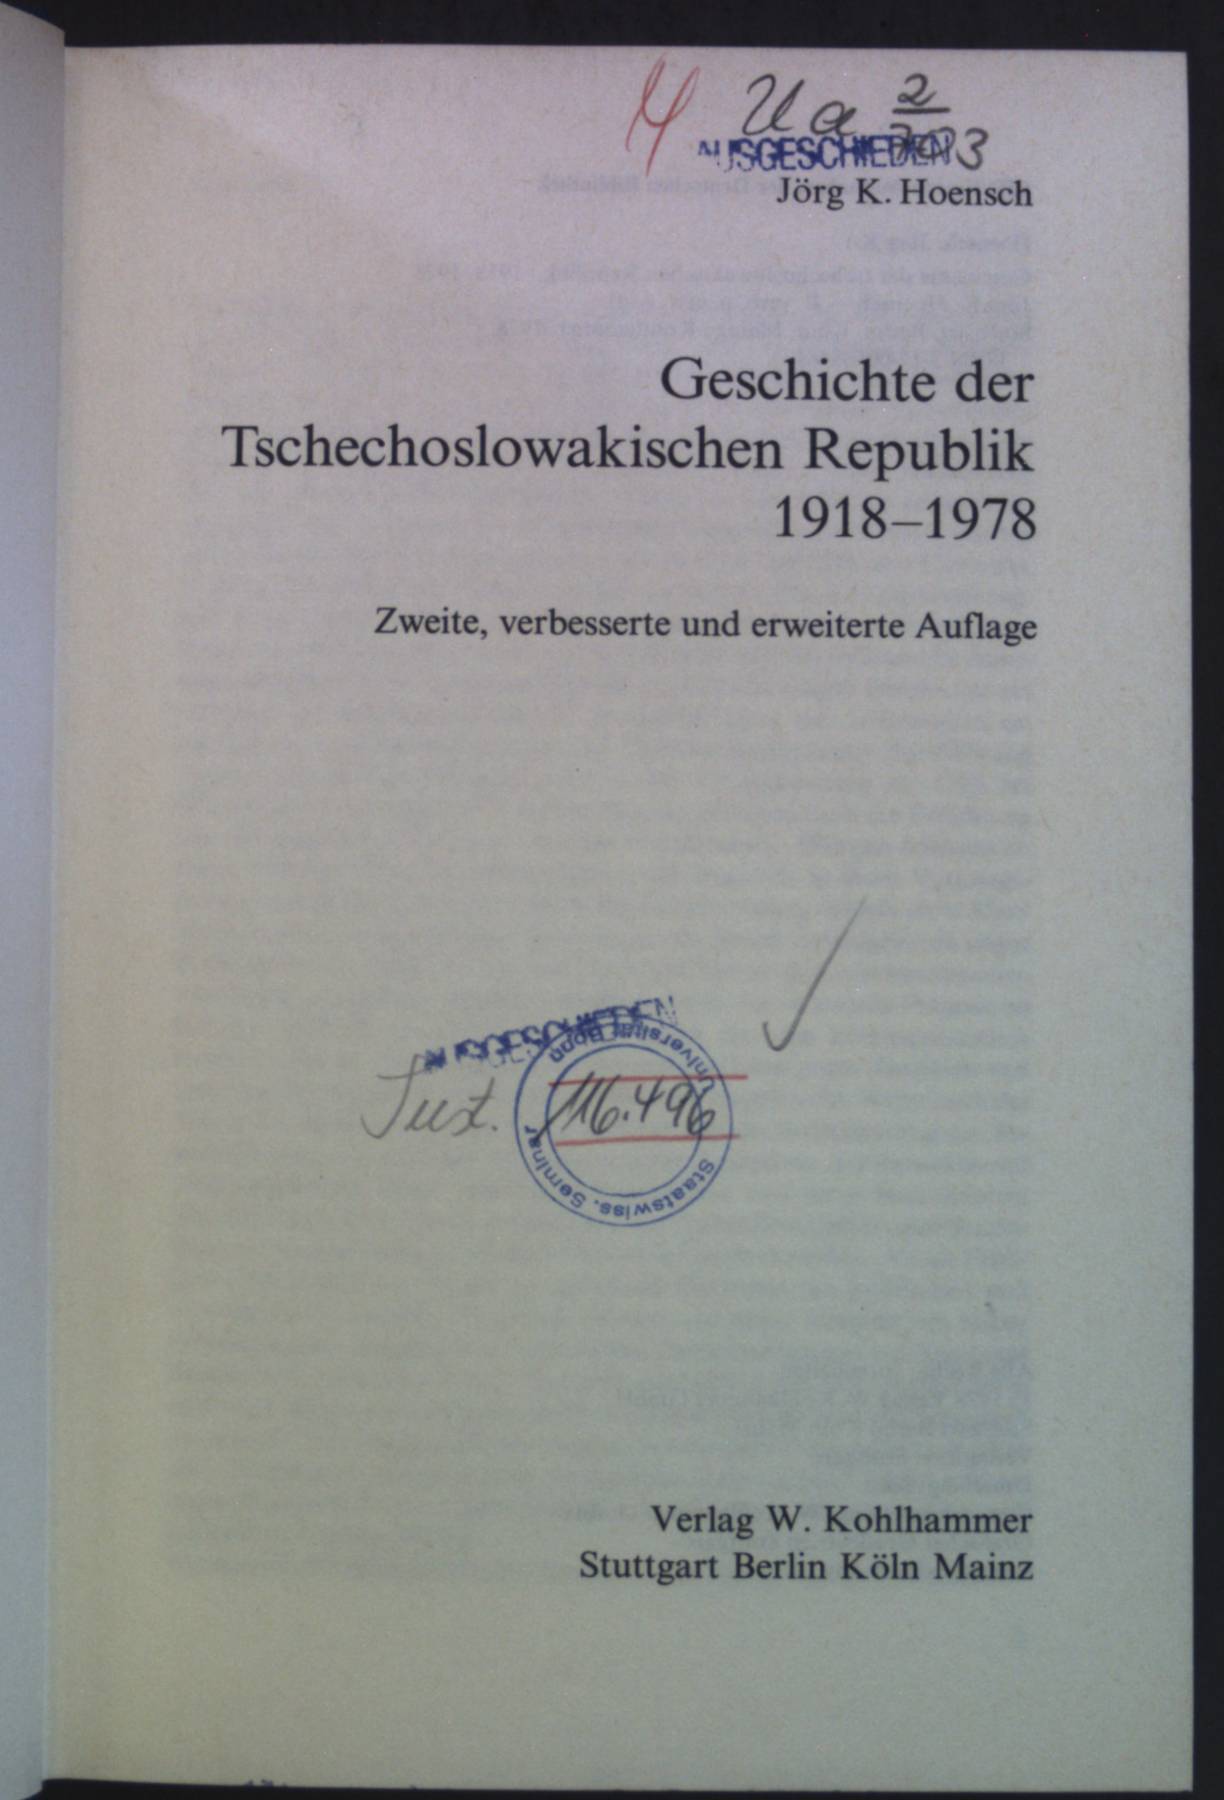 Geschichte der tschechoslowakischen Republik : 1918 - 1978. - Hoensch, Jörg K.